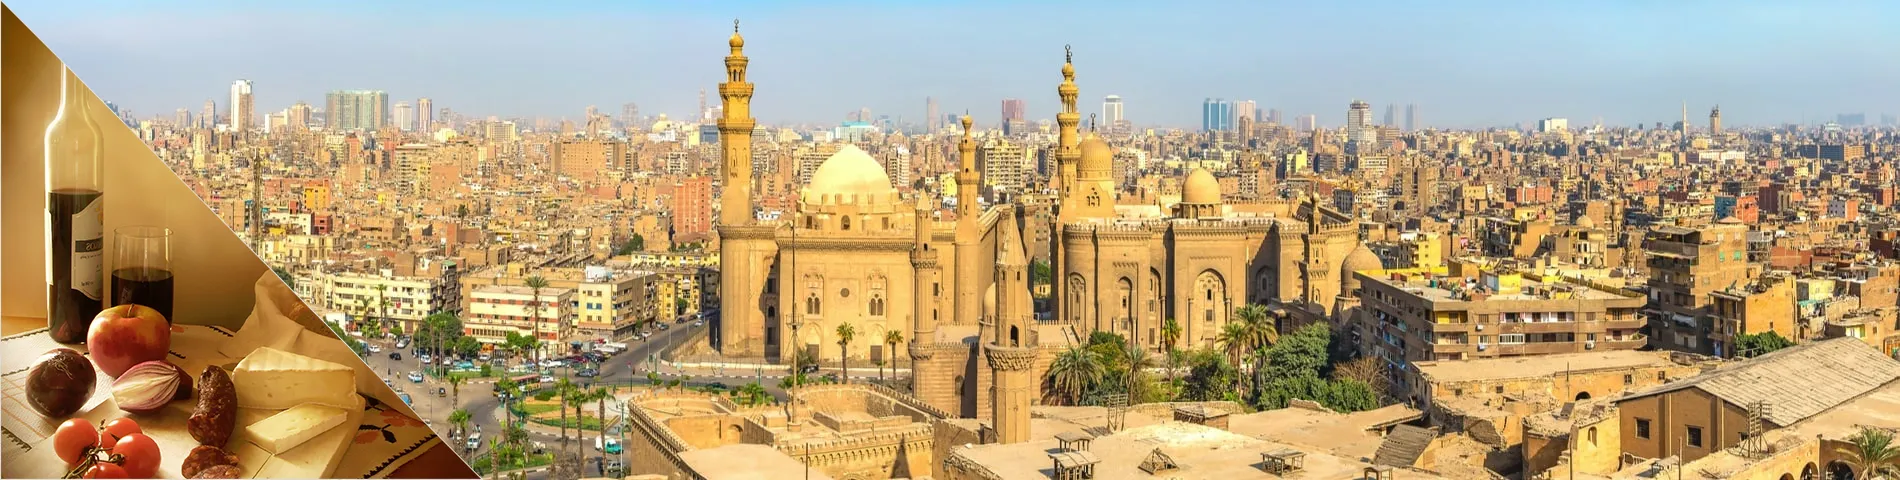 Káhira - Arabčina a kultúra